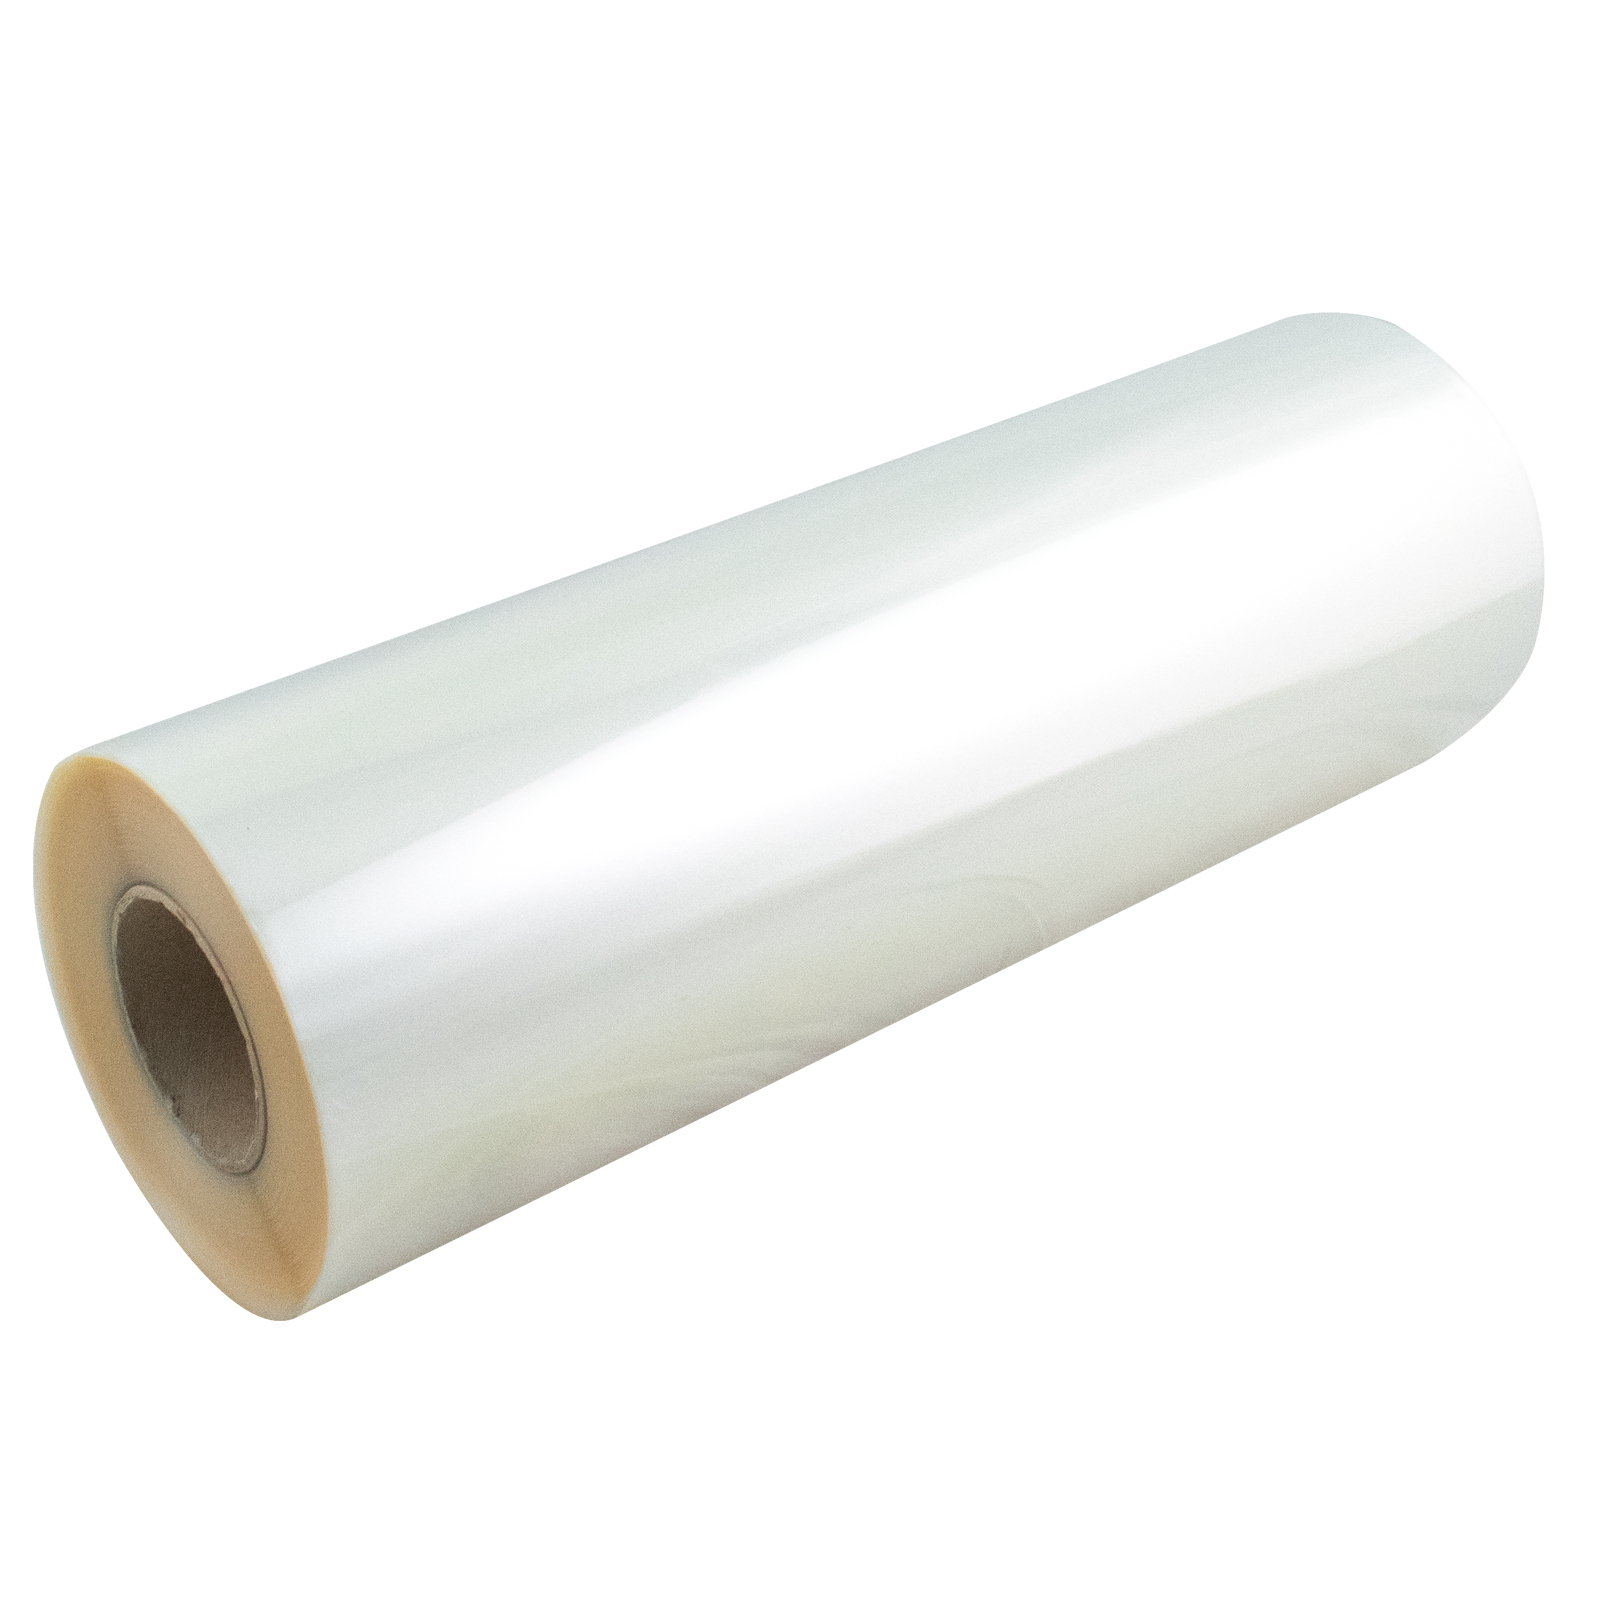 Polypropylen Rolle, transparent, 30 µ, 50 cm breit-doppelt gewickelt, 250 lfm, 1 Rolle